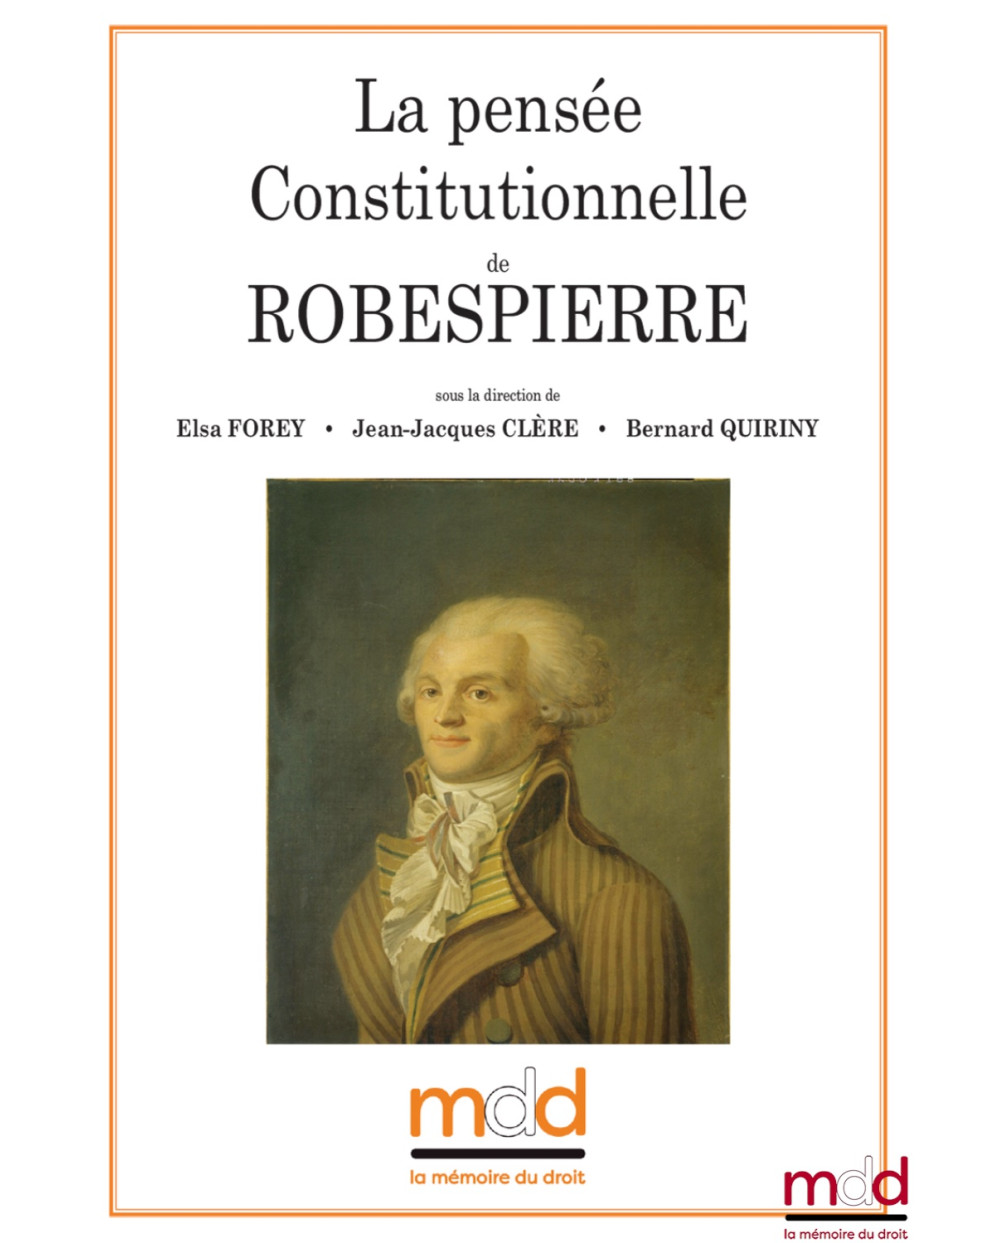 La pensée constitutionnelle de ROBESPIERRE, colloque des jeudi 18 et vendredi 19 mai 2017 sous la direction de Elsa FOREY • J...